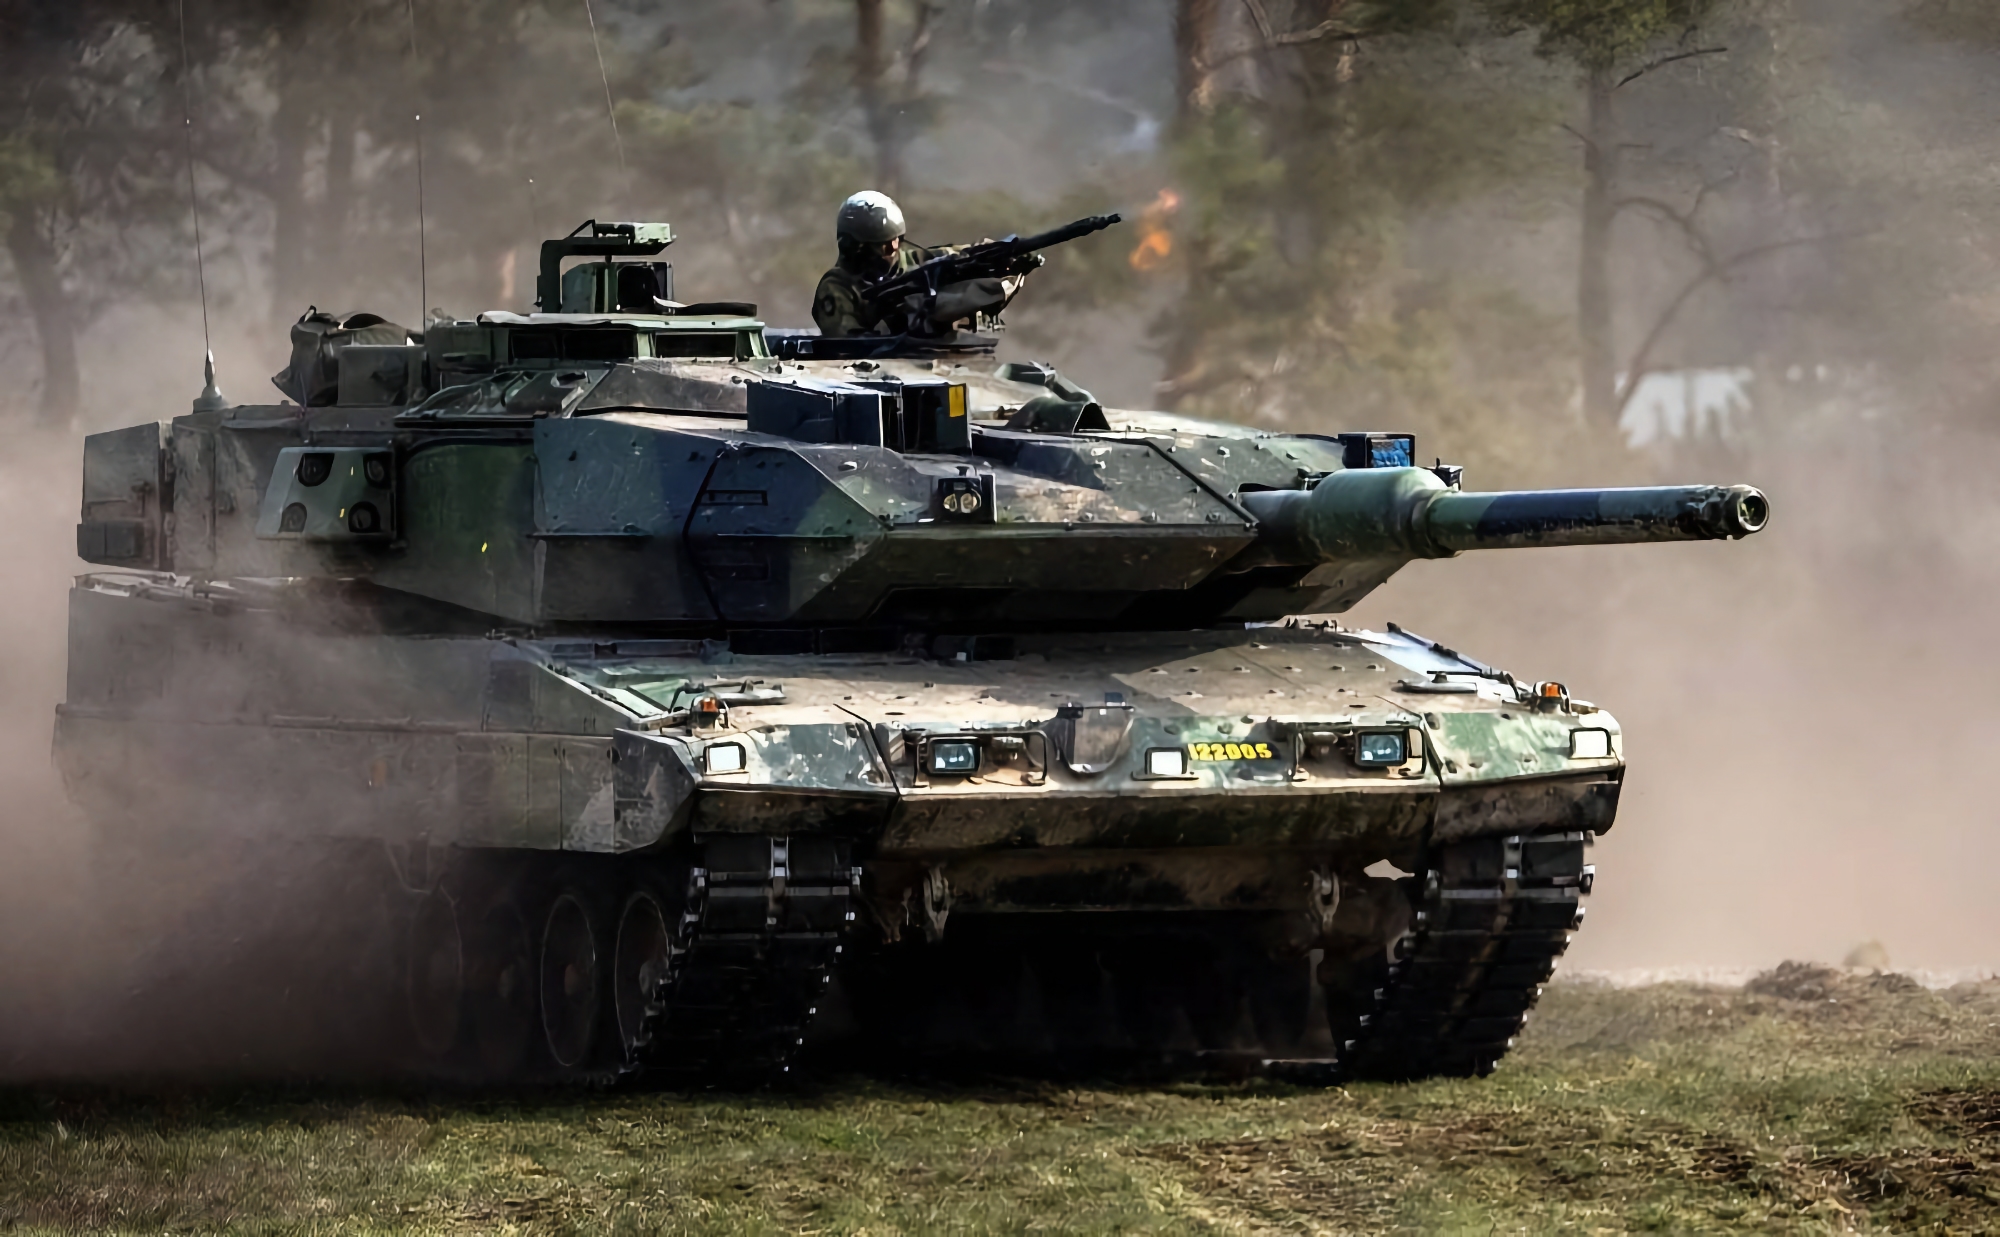 Sverige vil overføre en ny militær bistandspakke til Ukraina, inkludert ammunisjon til CV90 infanterikampvogner og Stridsvagn 122 (også kjent som Leopard 2A5).